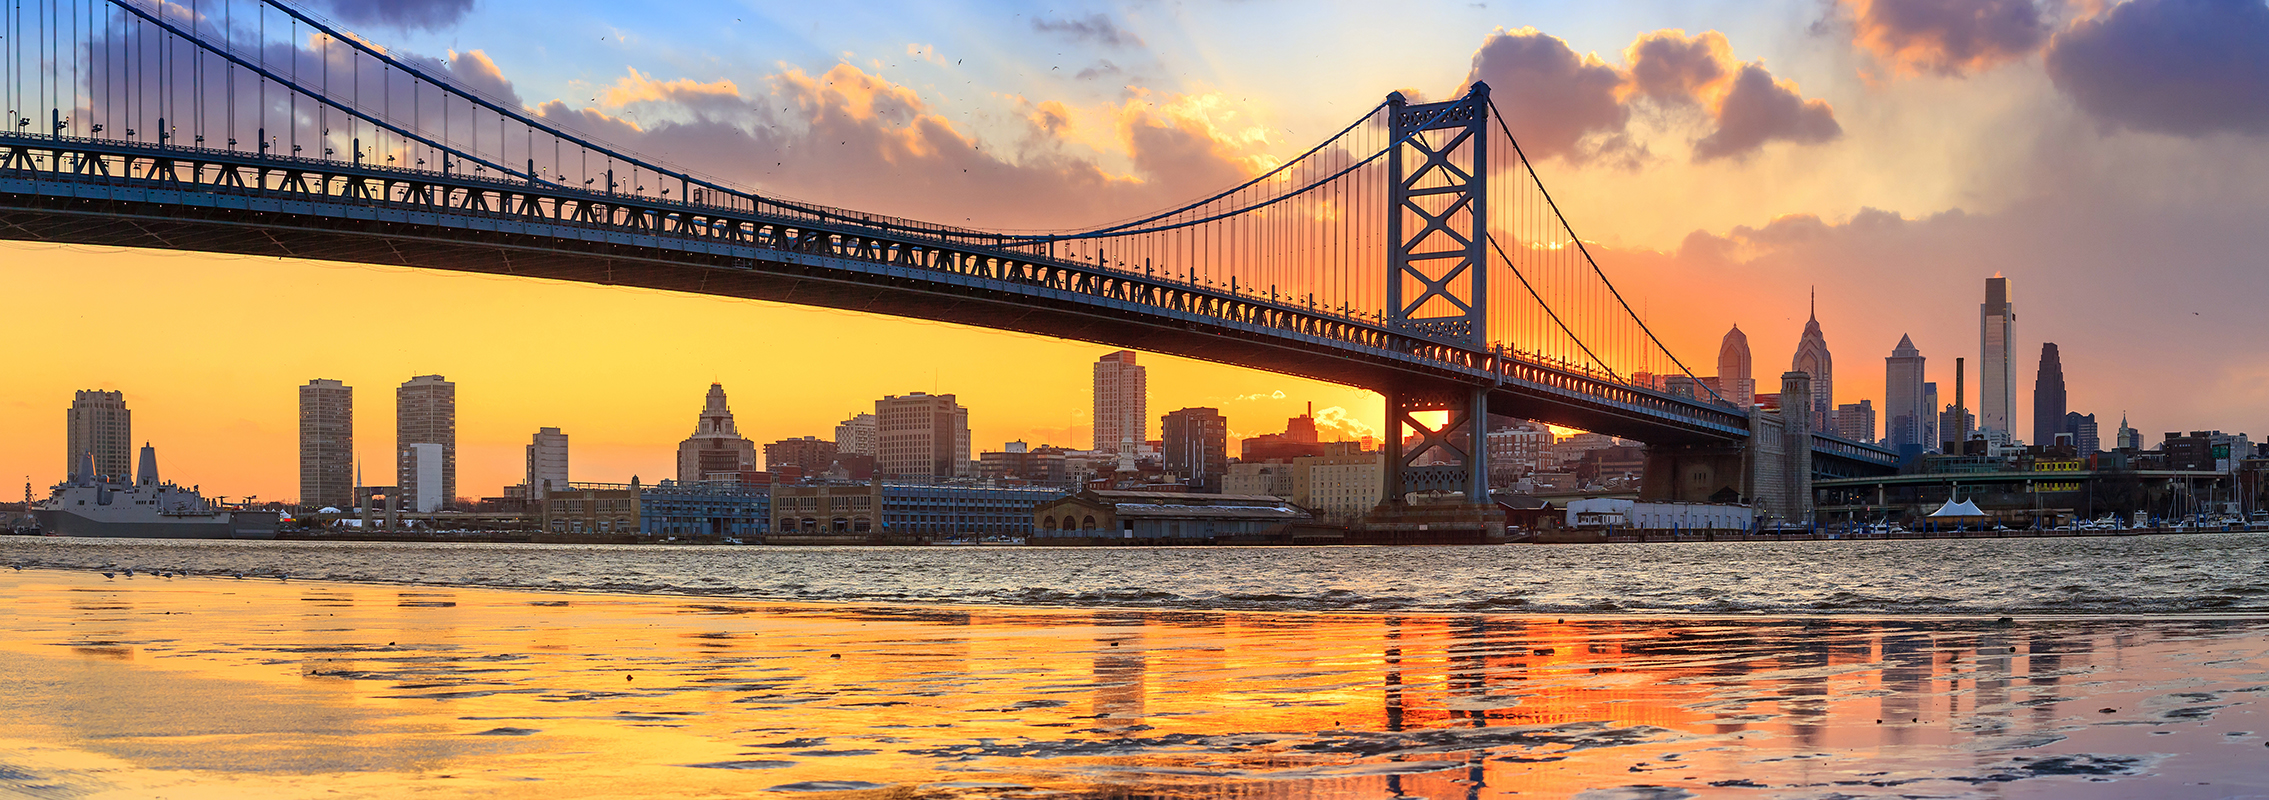 Panorama del horizonte de Philadelphia y el puente Ben Franklin Bridge al atardecer